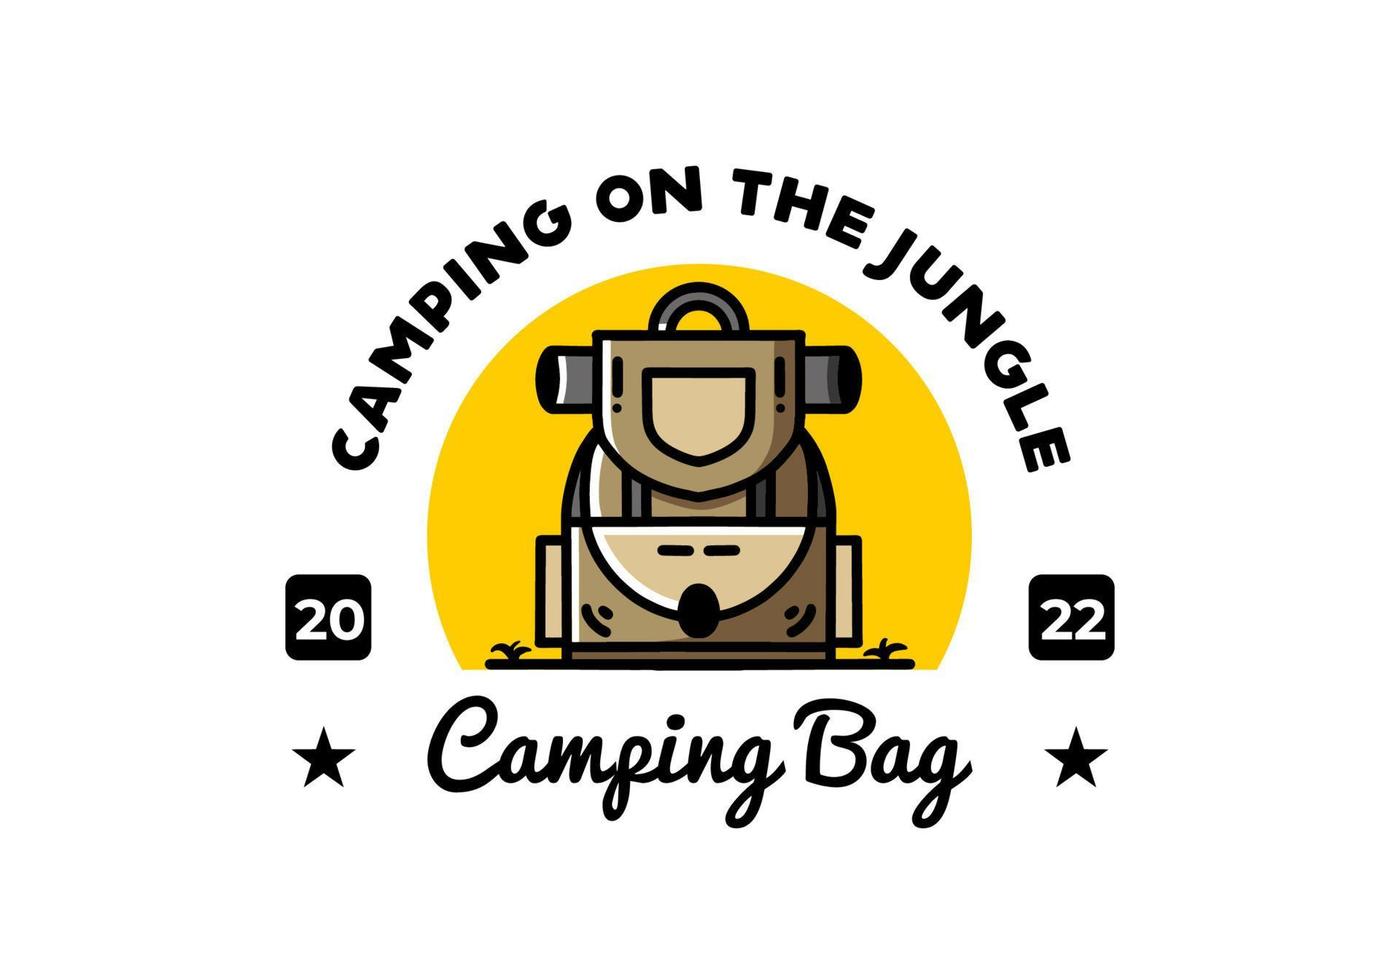 conception d'illustration de sac de camping simple vecteur